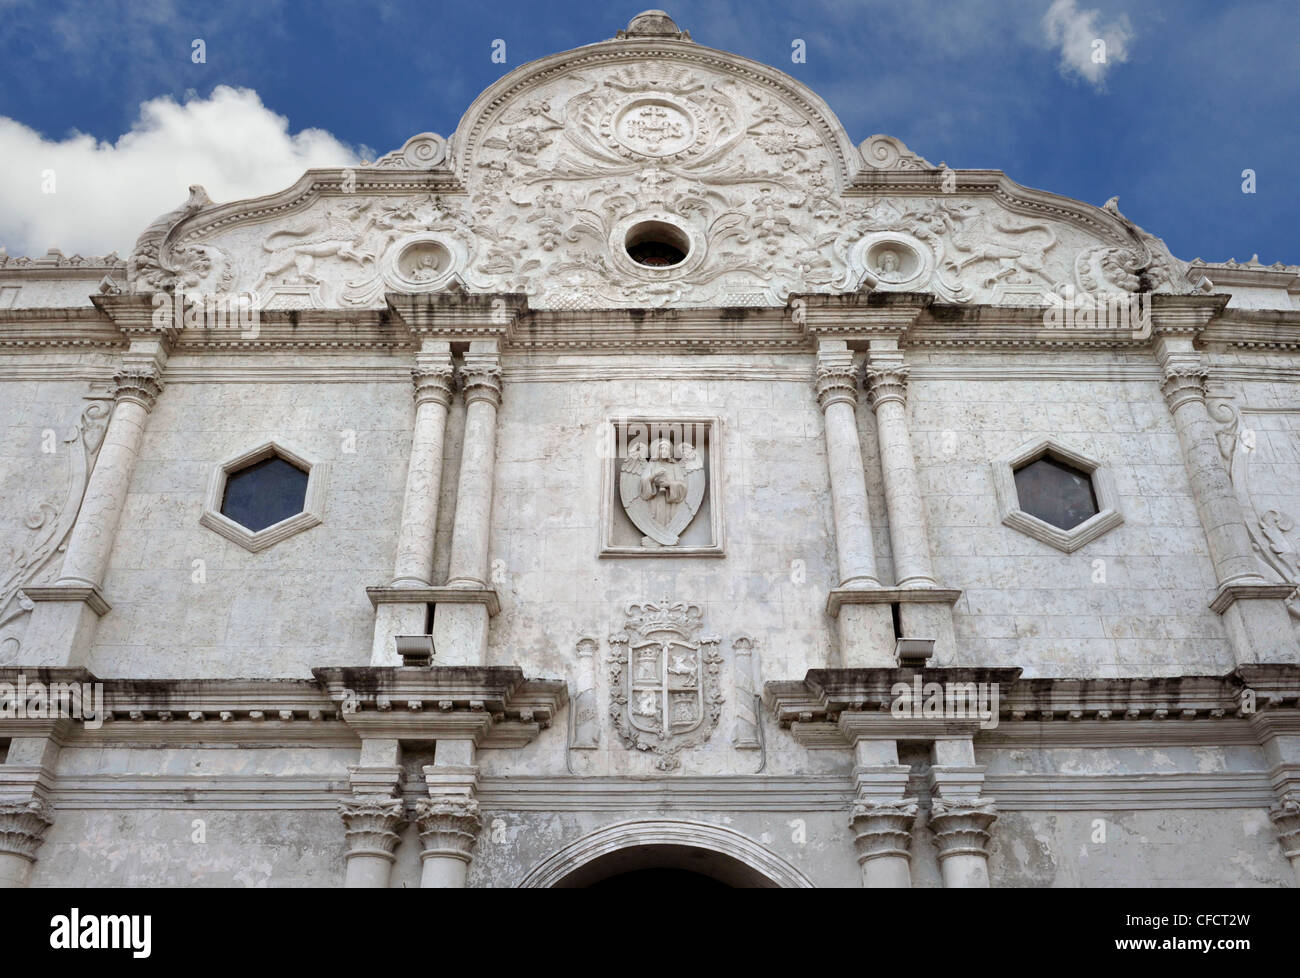 Die Fassade aus dem 18. Jahrhundert von Cebu Kathedrale, gegründet im frühen 17. Jahrhundert, Cebu, Philippinen, Südostasien, Asien Stockfoto